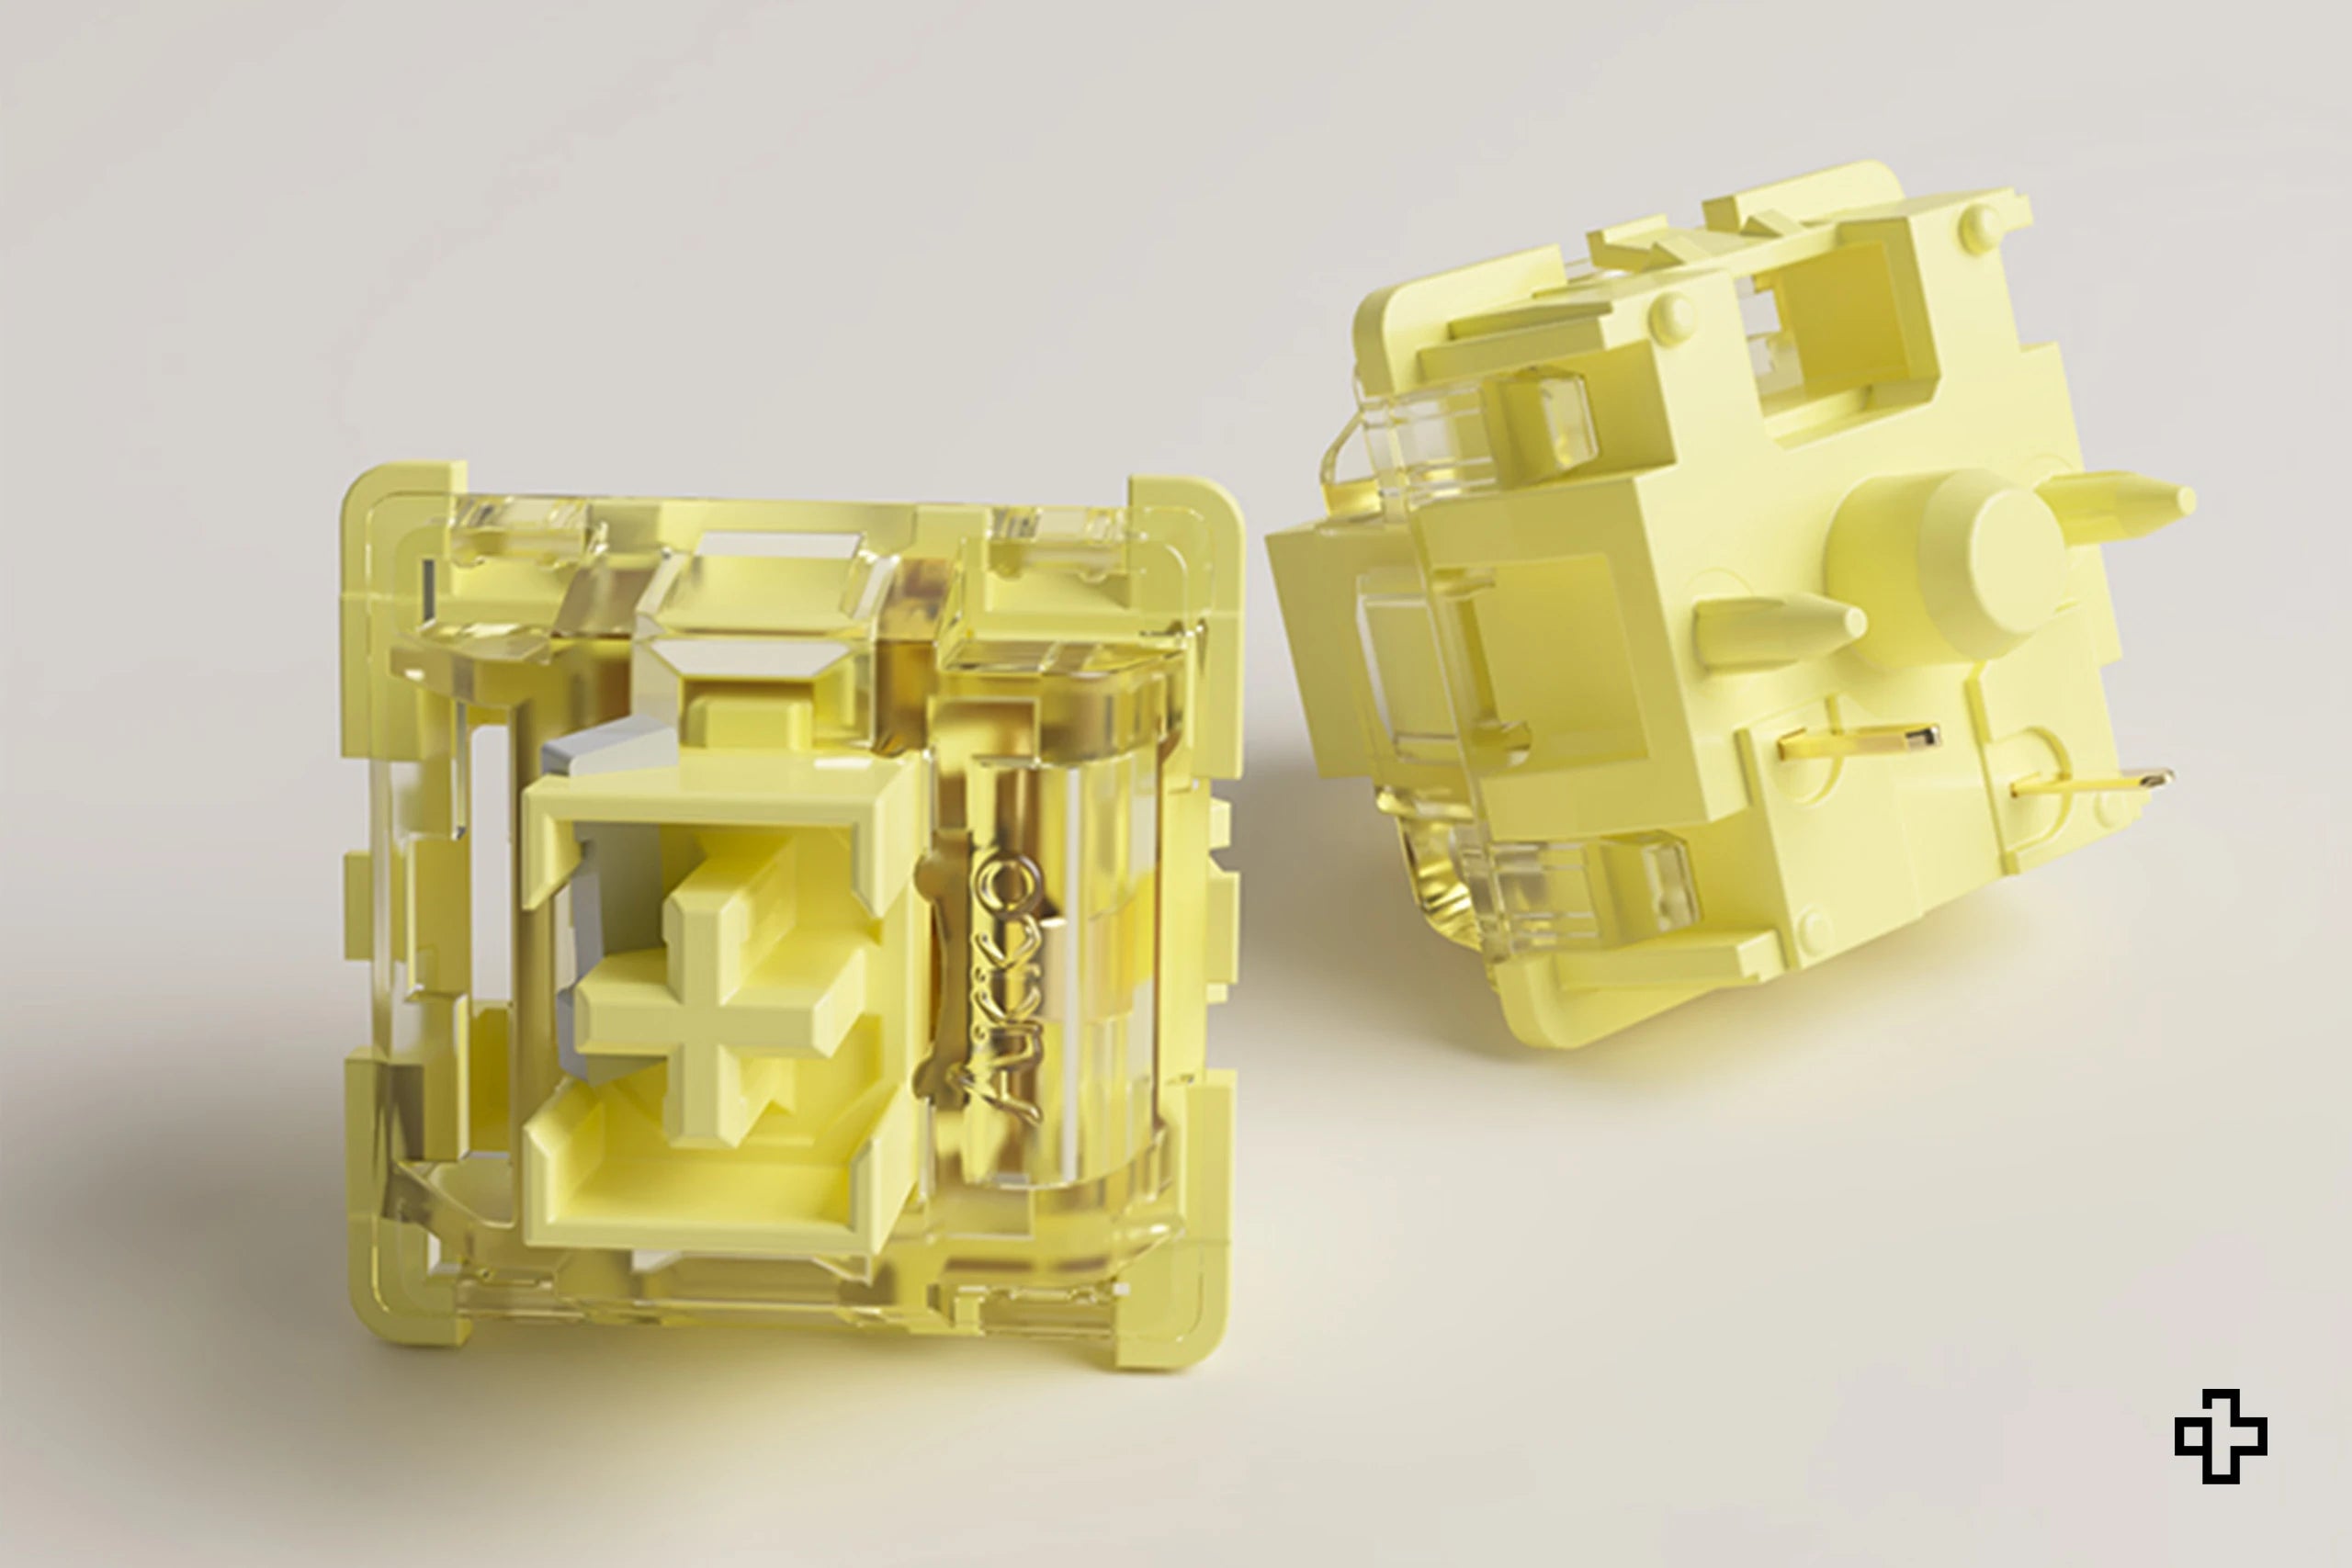 45 Switchuri Pro Akko de color amarillo crema.